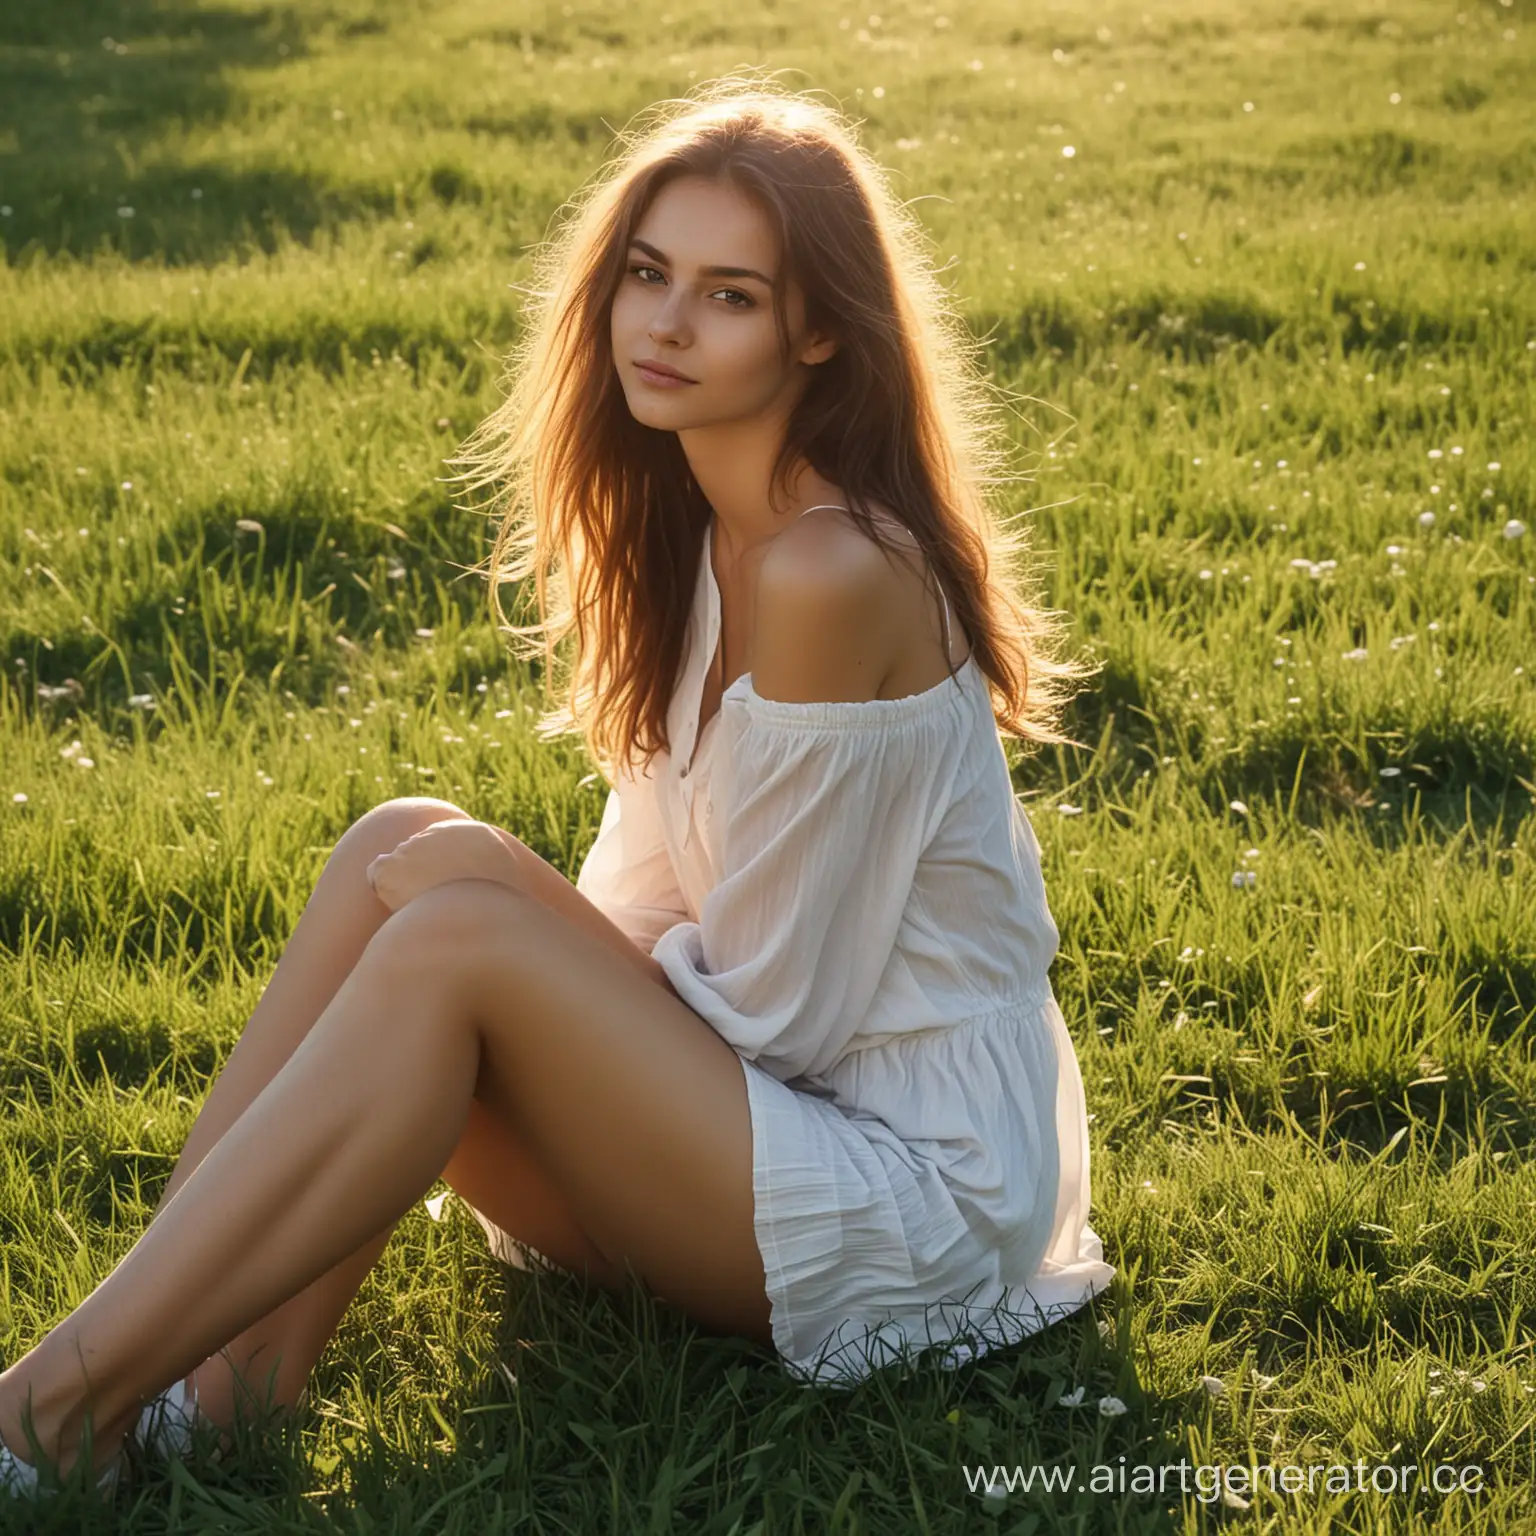 Melancholic-Girl-Sitting-on-Sunlit-Grass